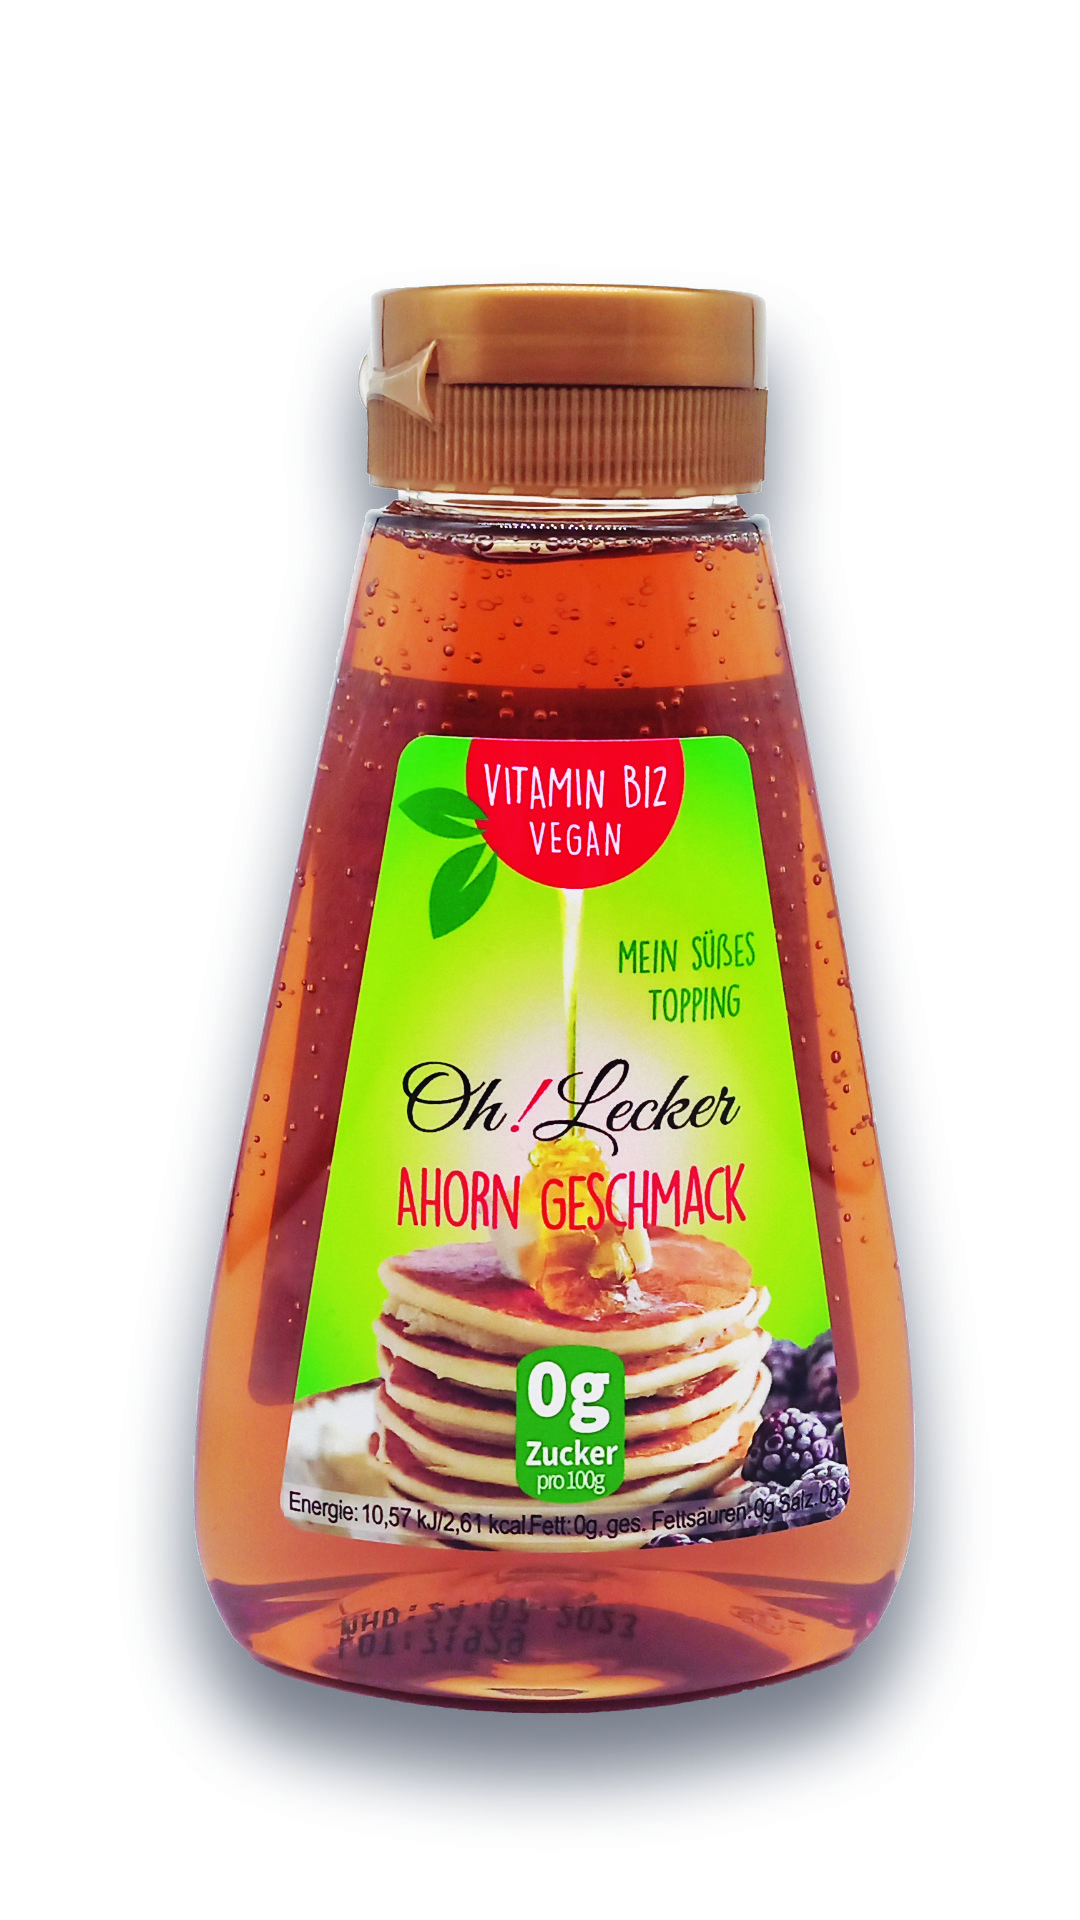 2 x Oh! Lecker Stevia* Sirup mit Ahorn-Geschmack, Vitamin B12, 265g